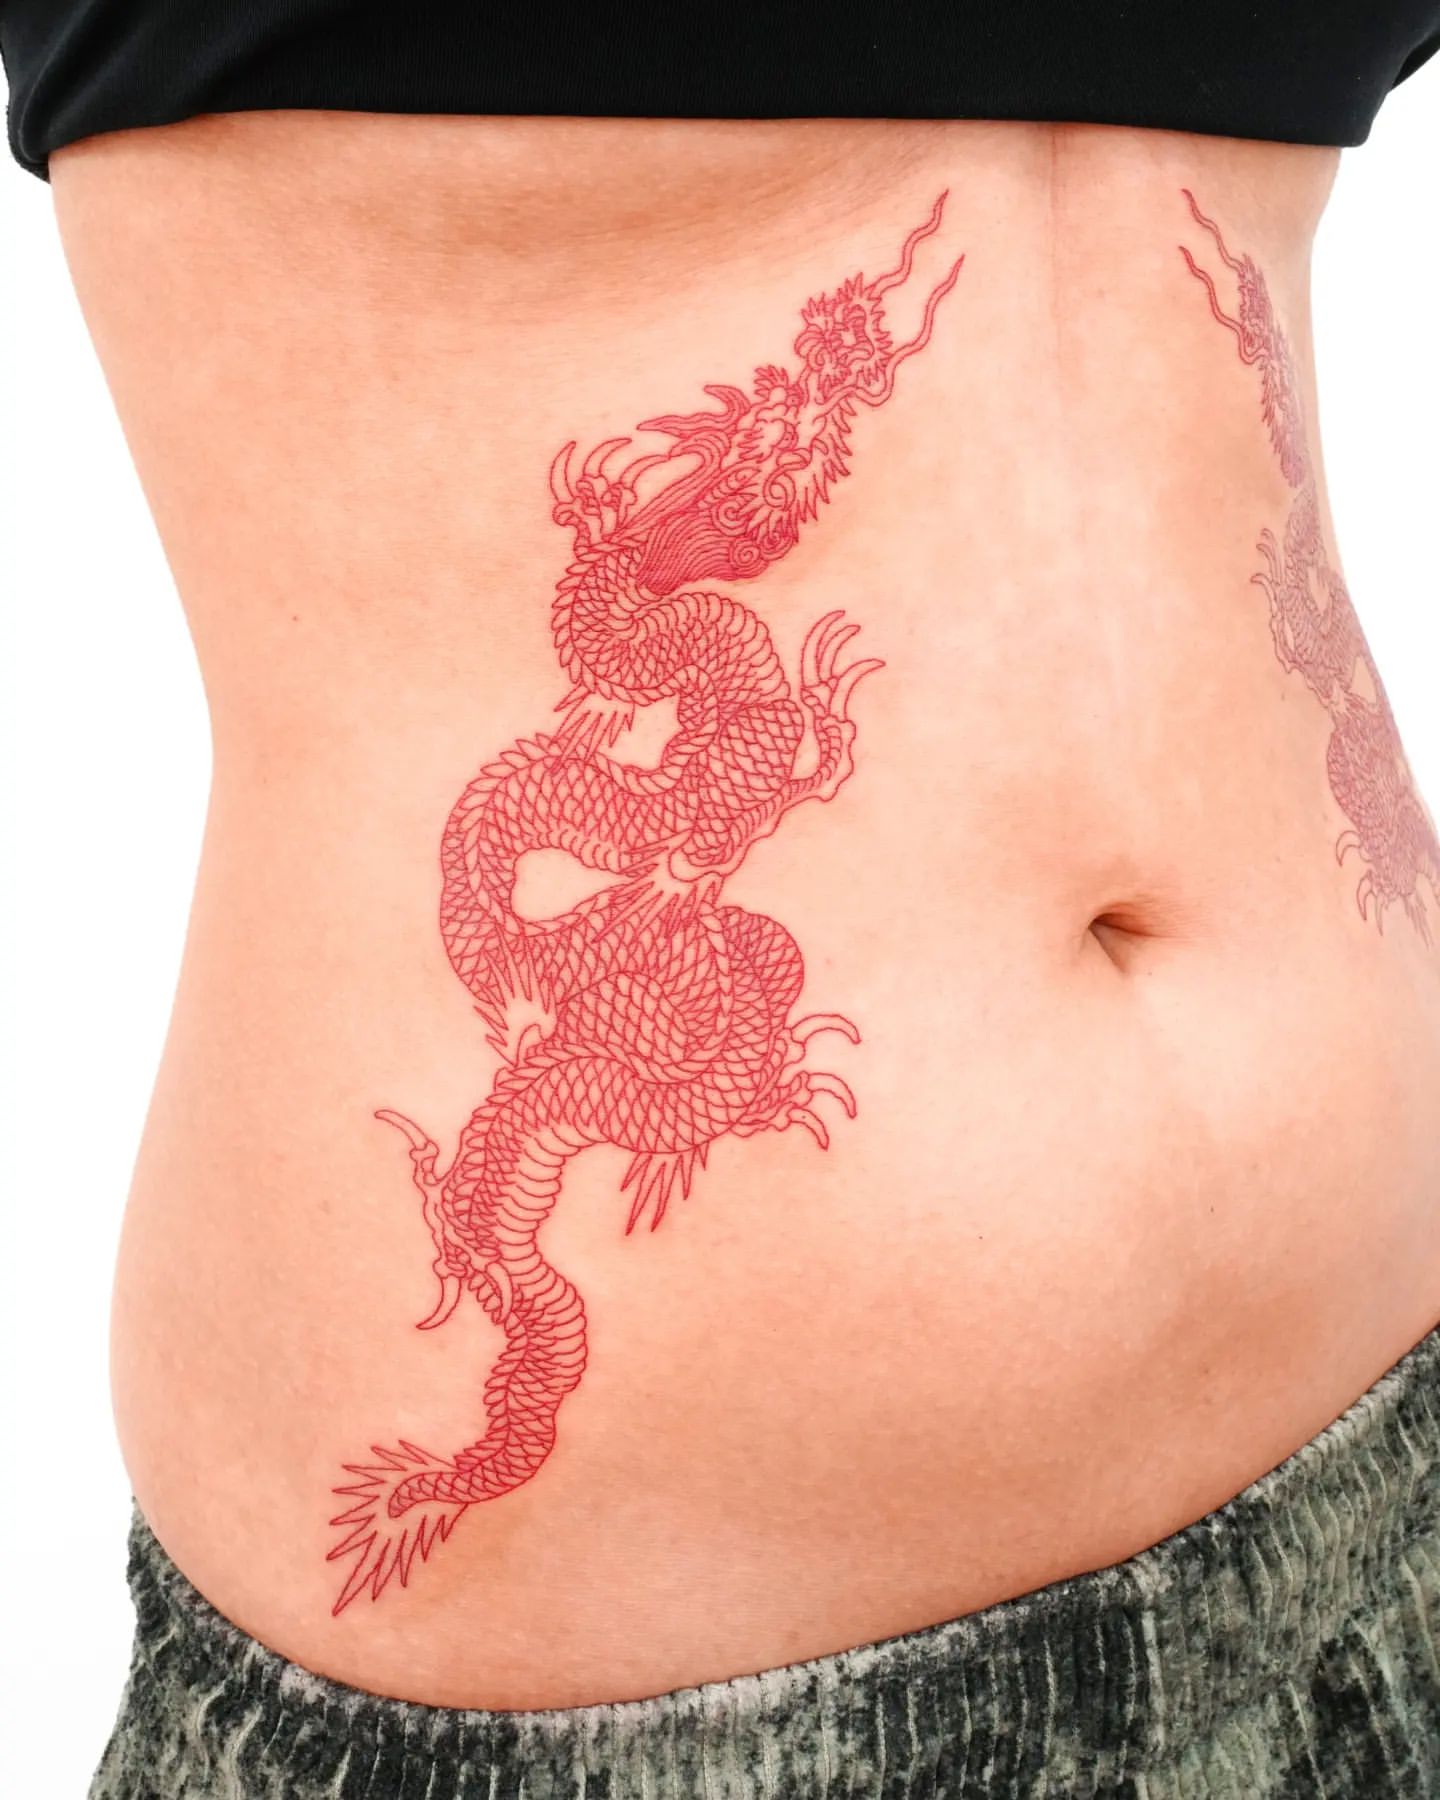 Stomach Tattoo Ideas 14